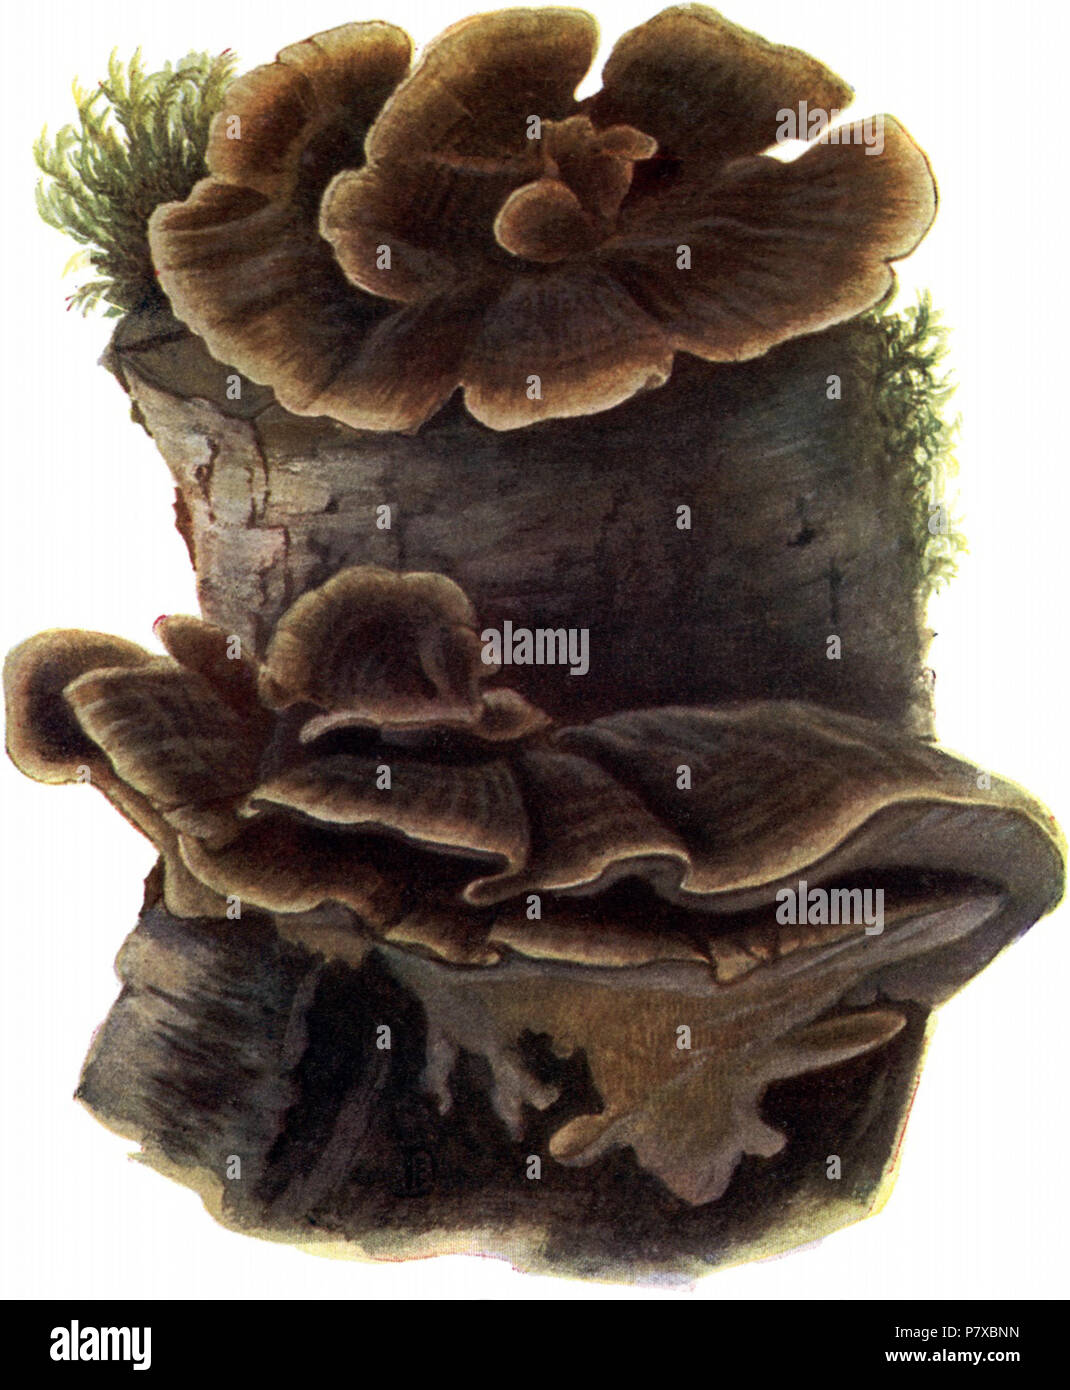 Deutsch: Bunter Porling, Polyporus versicolor. before 1940 312 Pilze d. Heimat, T. 28a - Polyporus versicolor Stock Photo